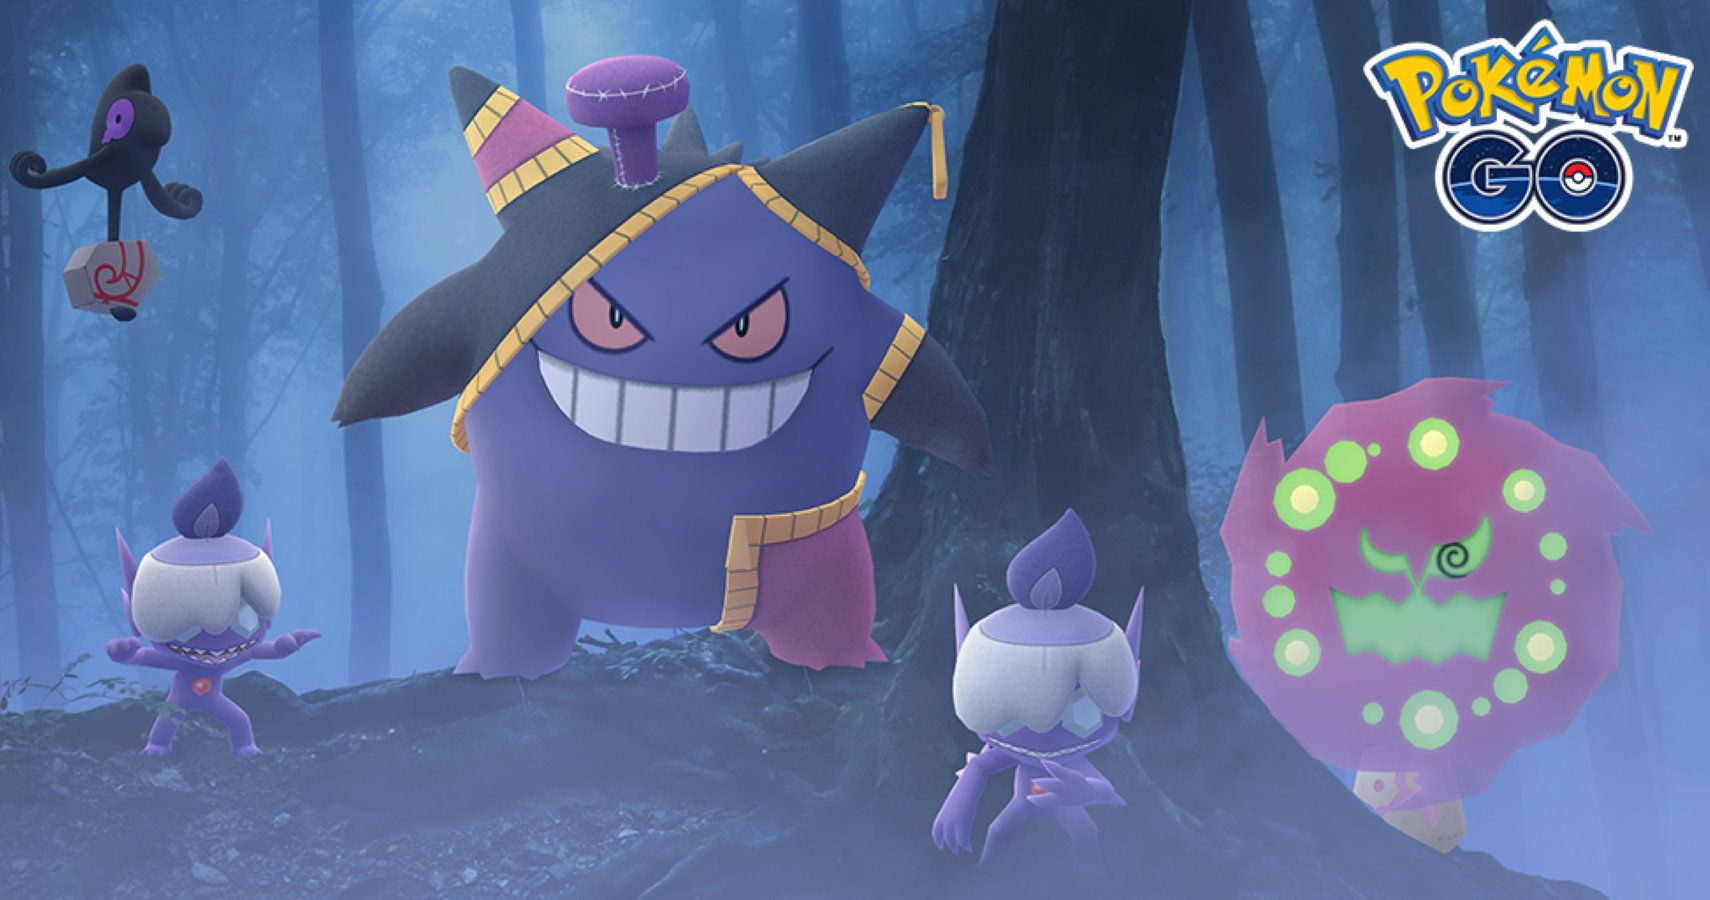 Halloween 2020 Pokemon Go - via Niantic